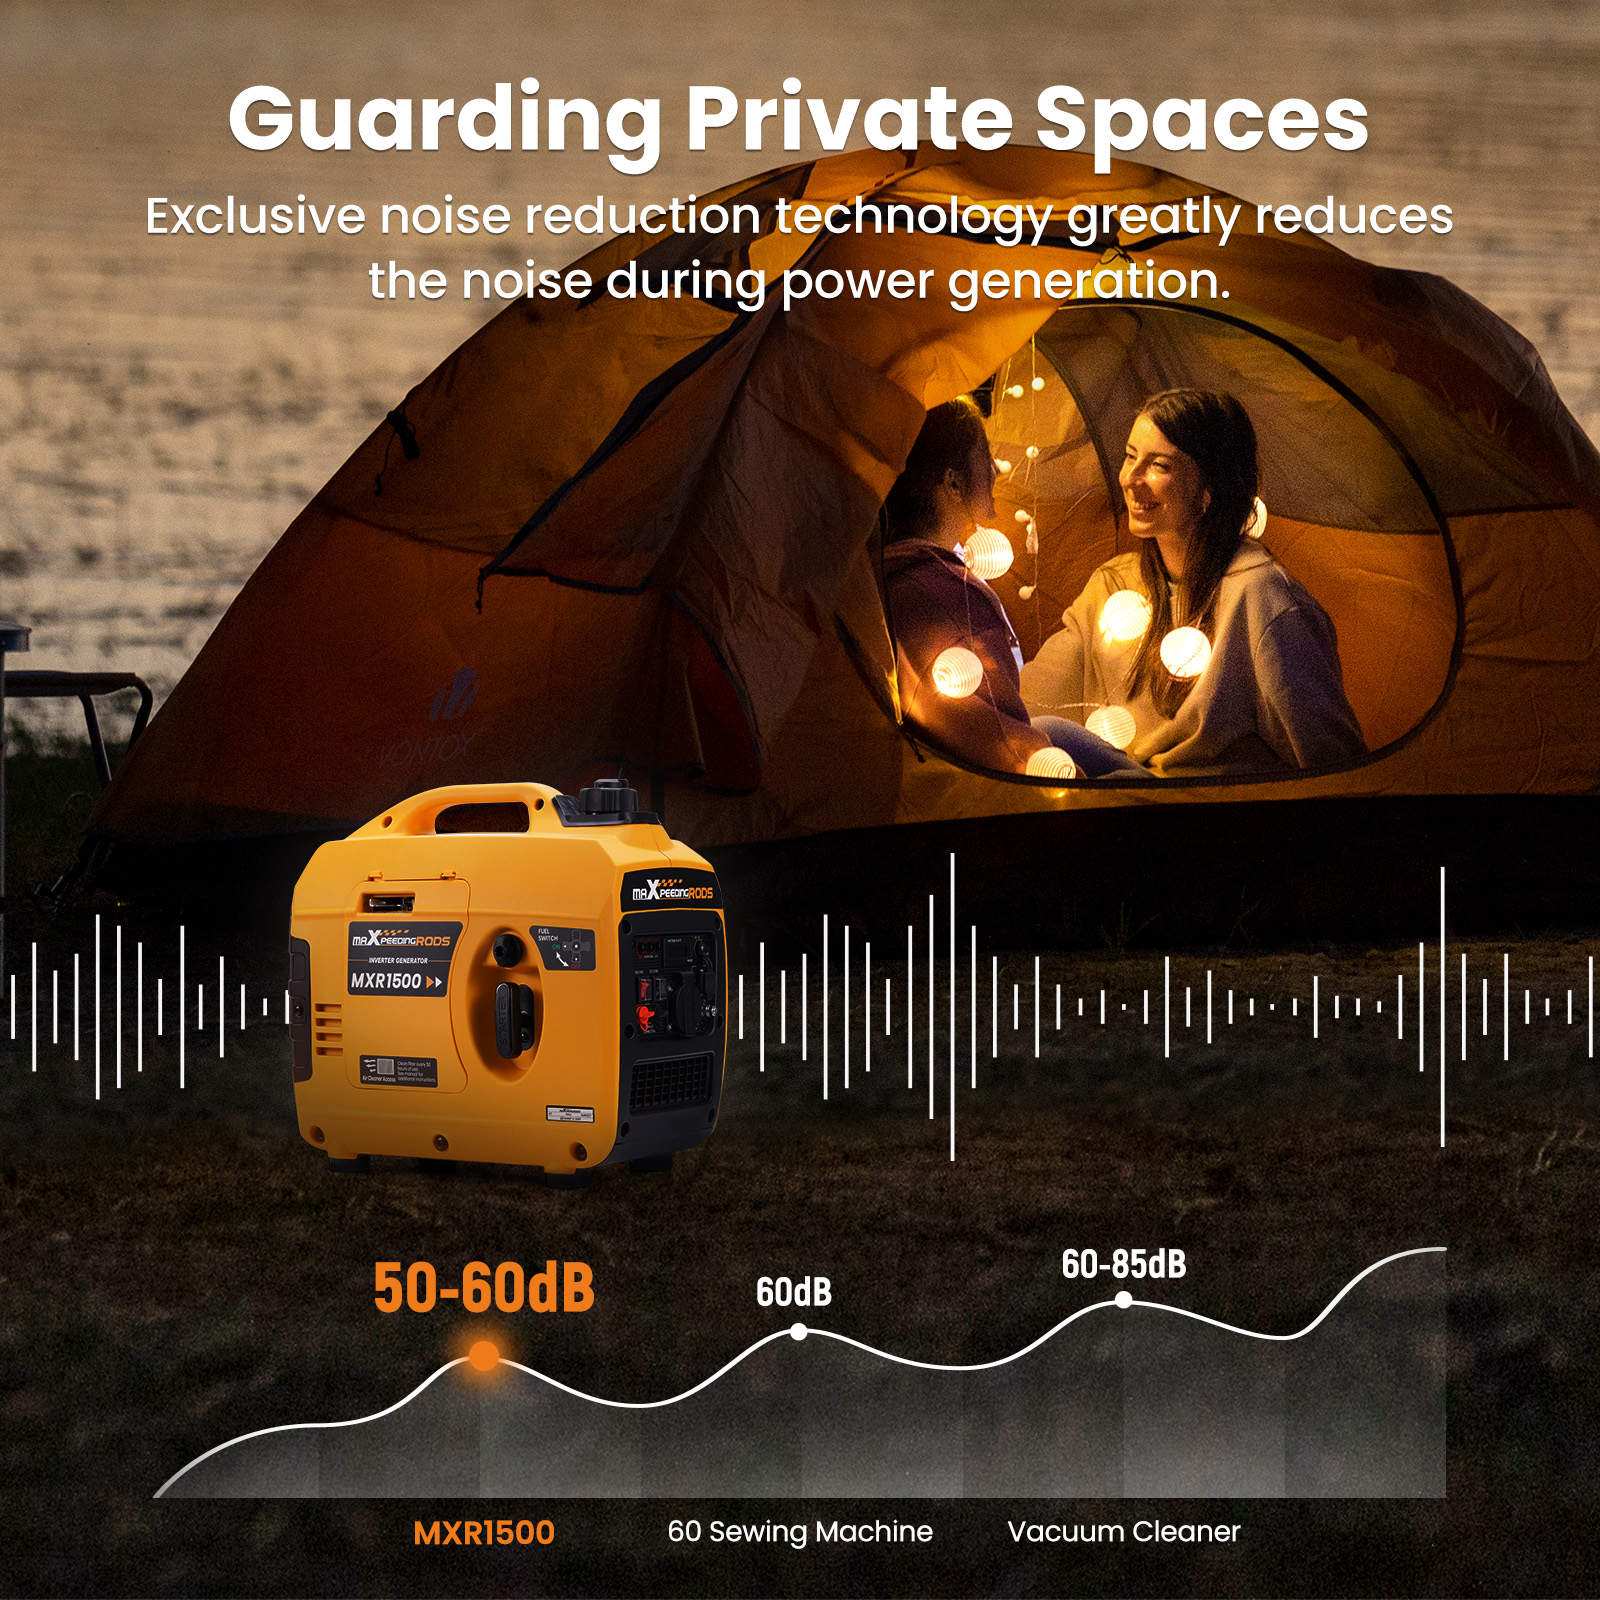 Générateur onduleur portable de 5000 watts pour l'alimentation d'urgence  des ménages, les voyages en camping-car, le camping en plein air et la  chasse.